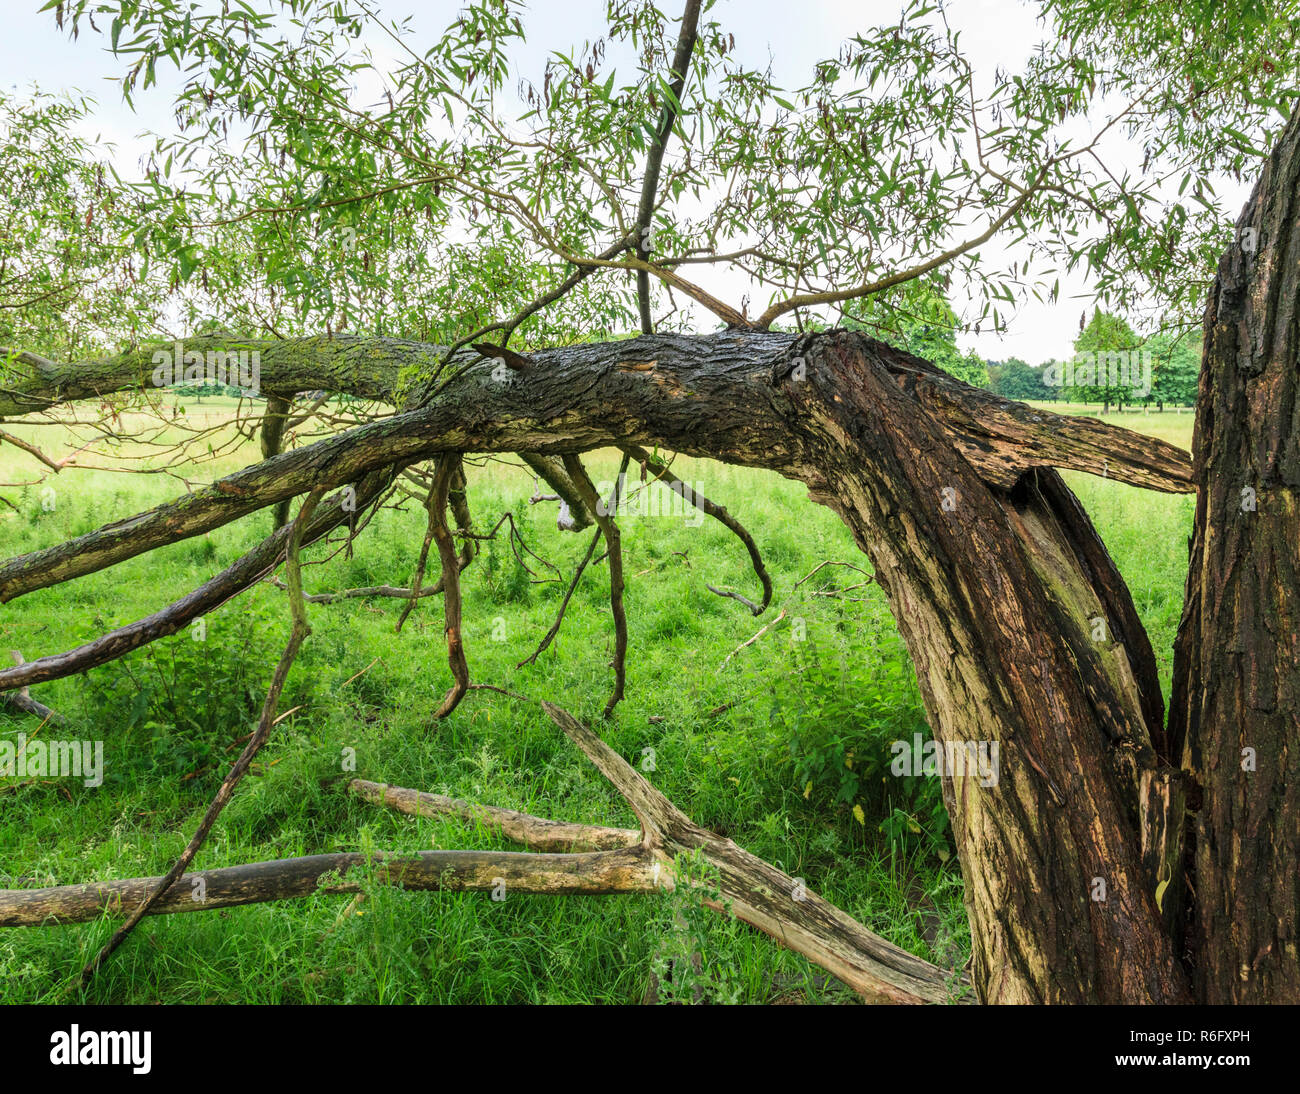 La nouvelle croissance sur un vieux tronc d'arbre fendu. Une tempête d'arbres endommagés avec de nouvelles feuilles en croissance, Nottingham, England, UK Banque D'Images